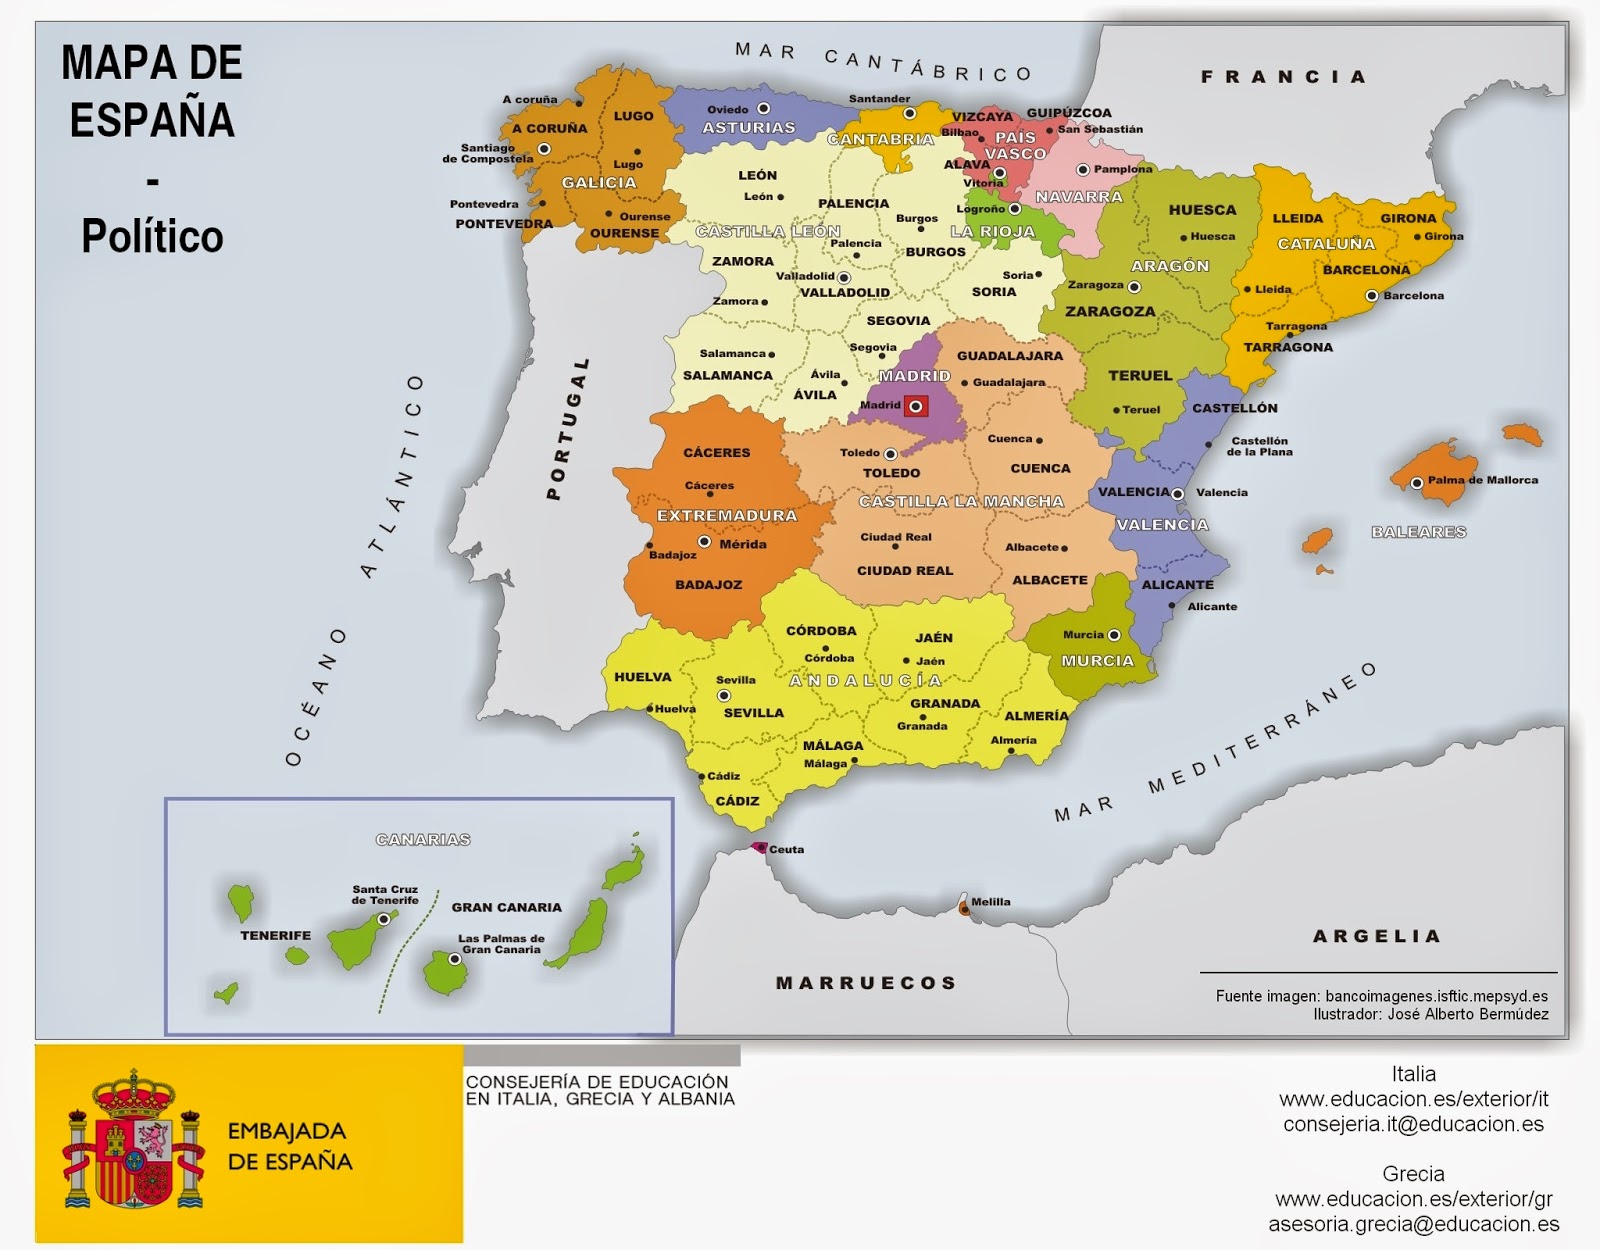 Español: ¡¡APRENDE LAS COMUNIDADES ESPAÑOLAS!!